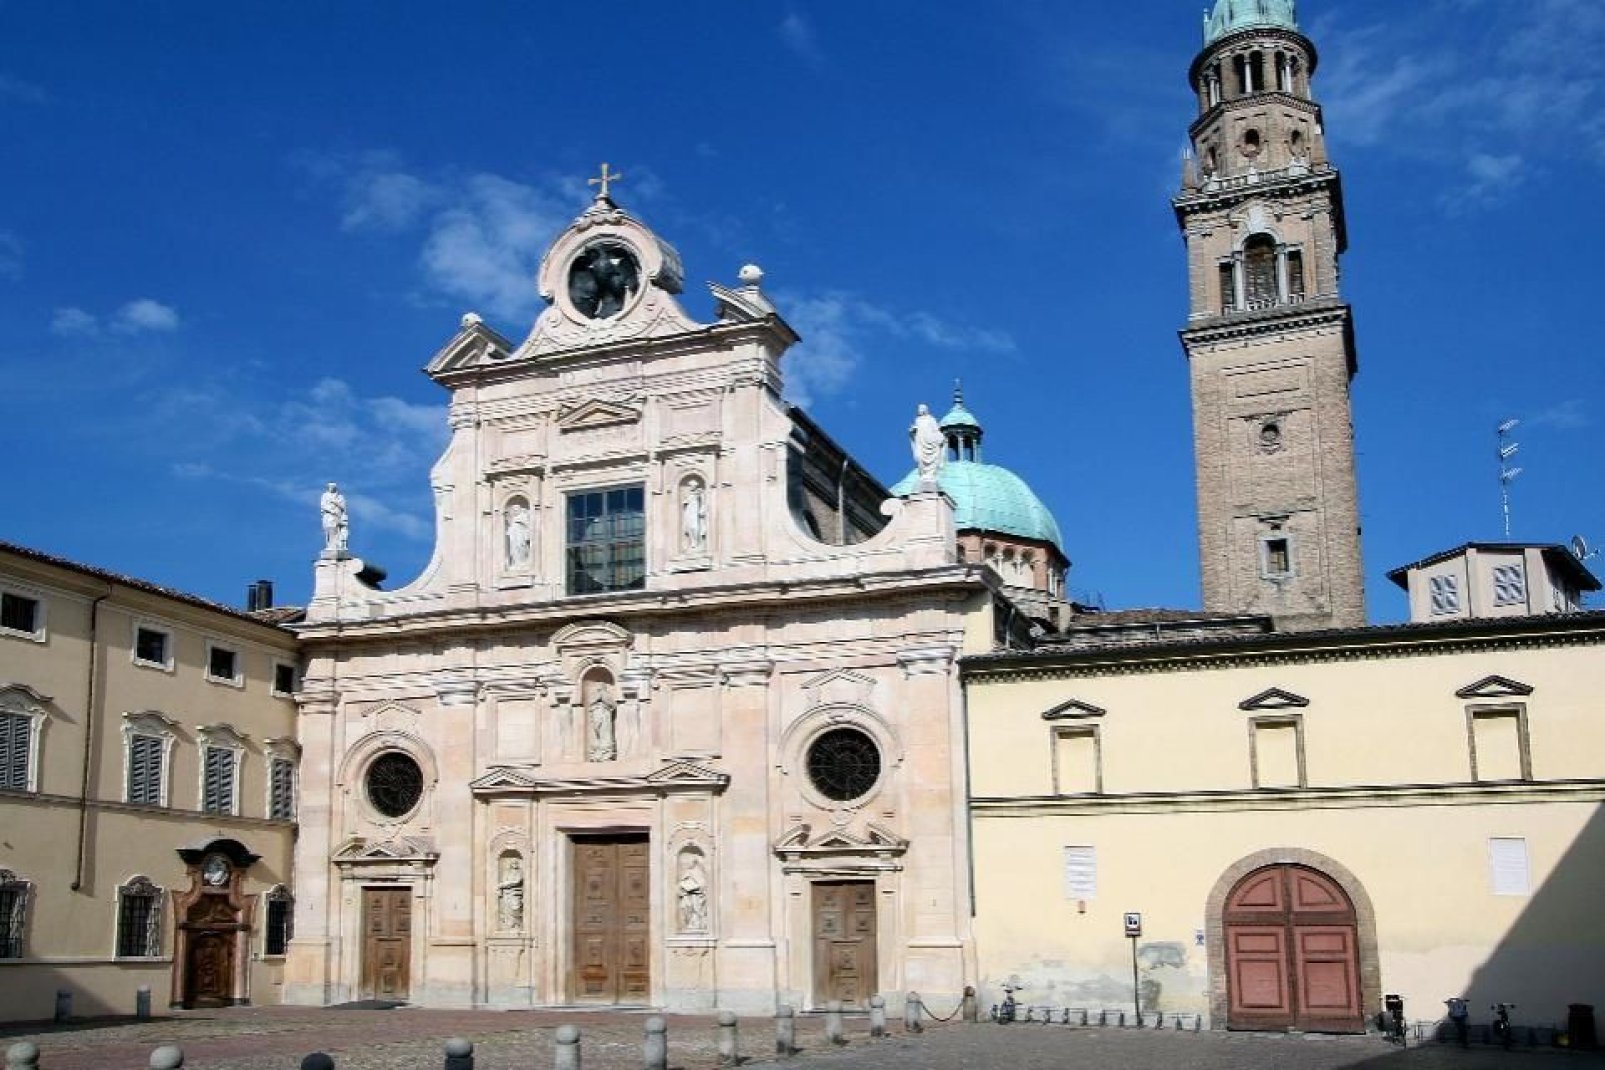 Parma, como muchas otras ciudades de la zona, tiene múltiples arcadas.